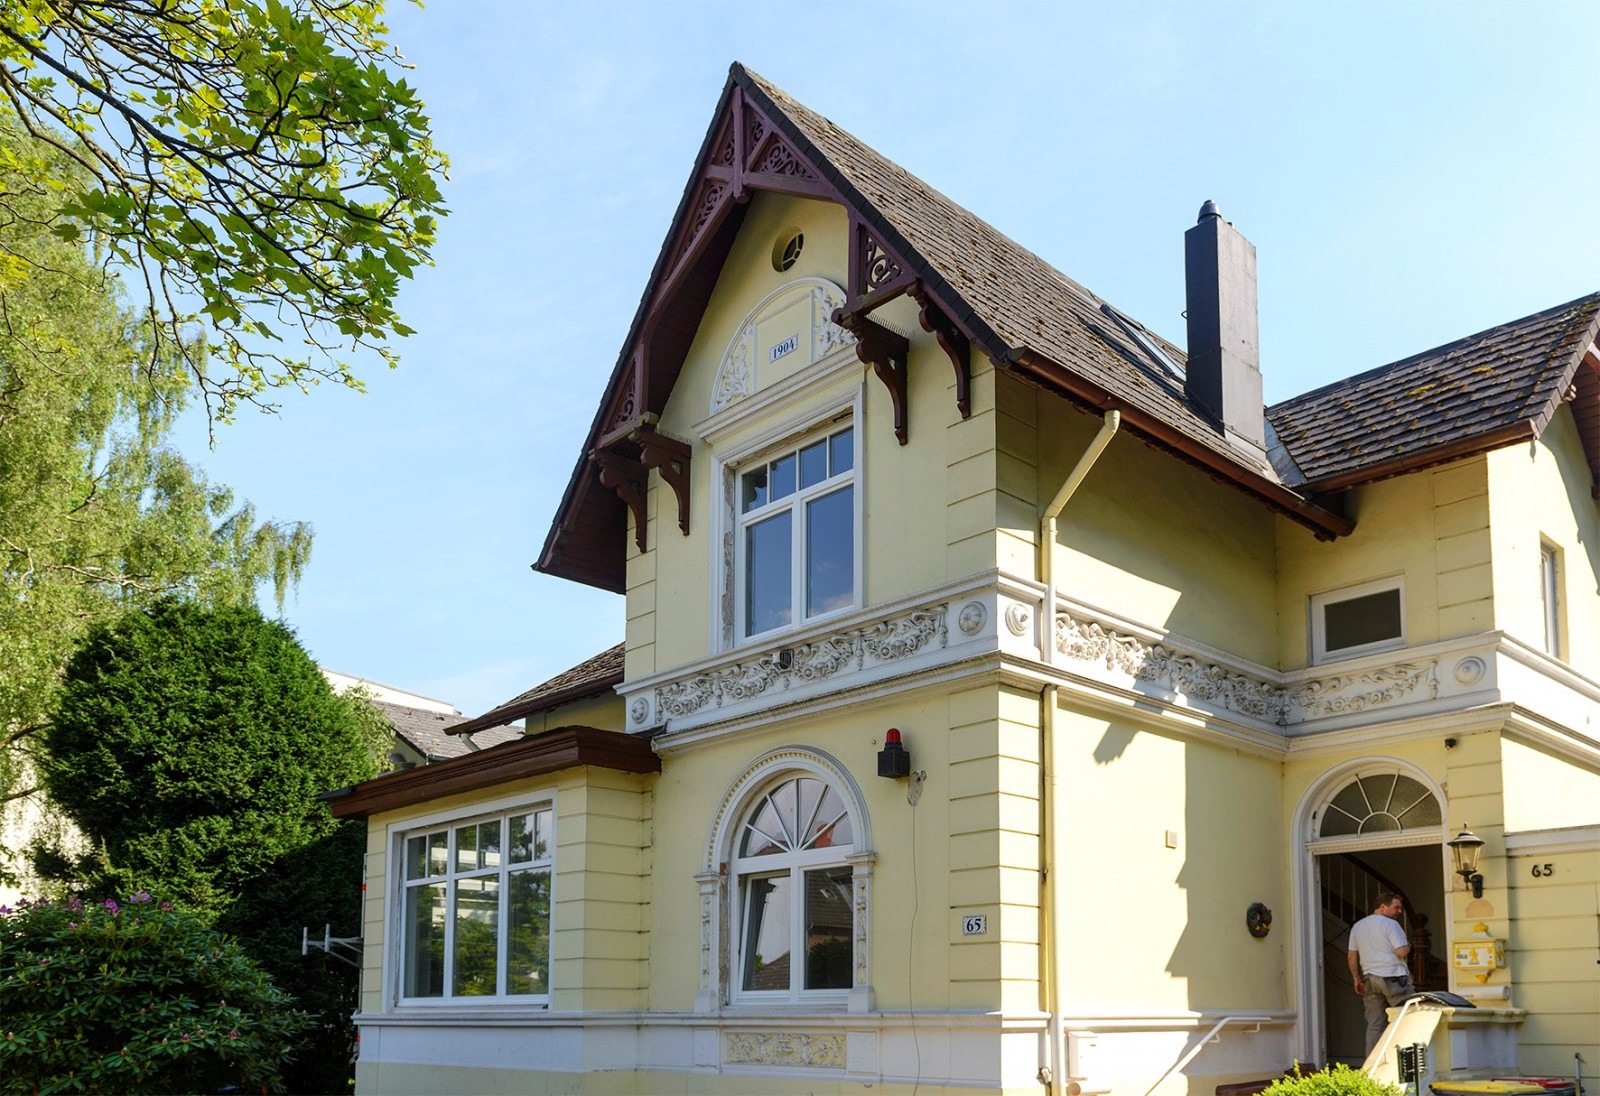 Mehr über den Artikel erfahren Historische Fenster renovieren – Erhaltung des Charmes